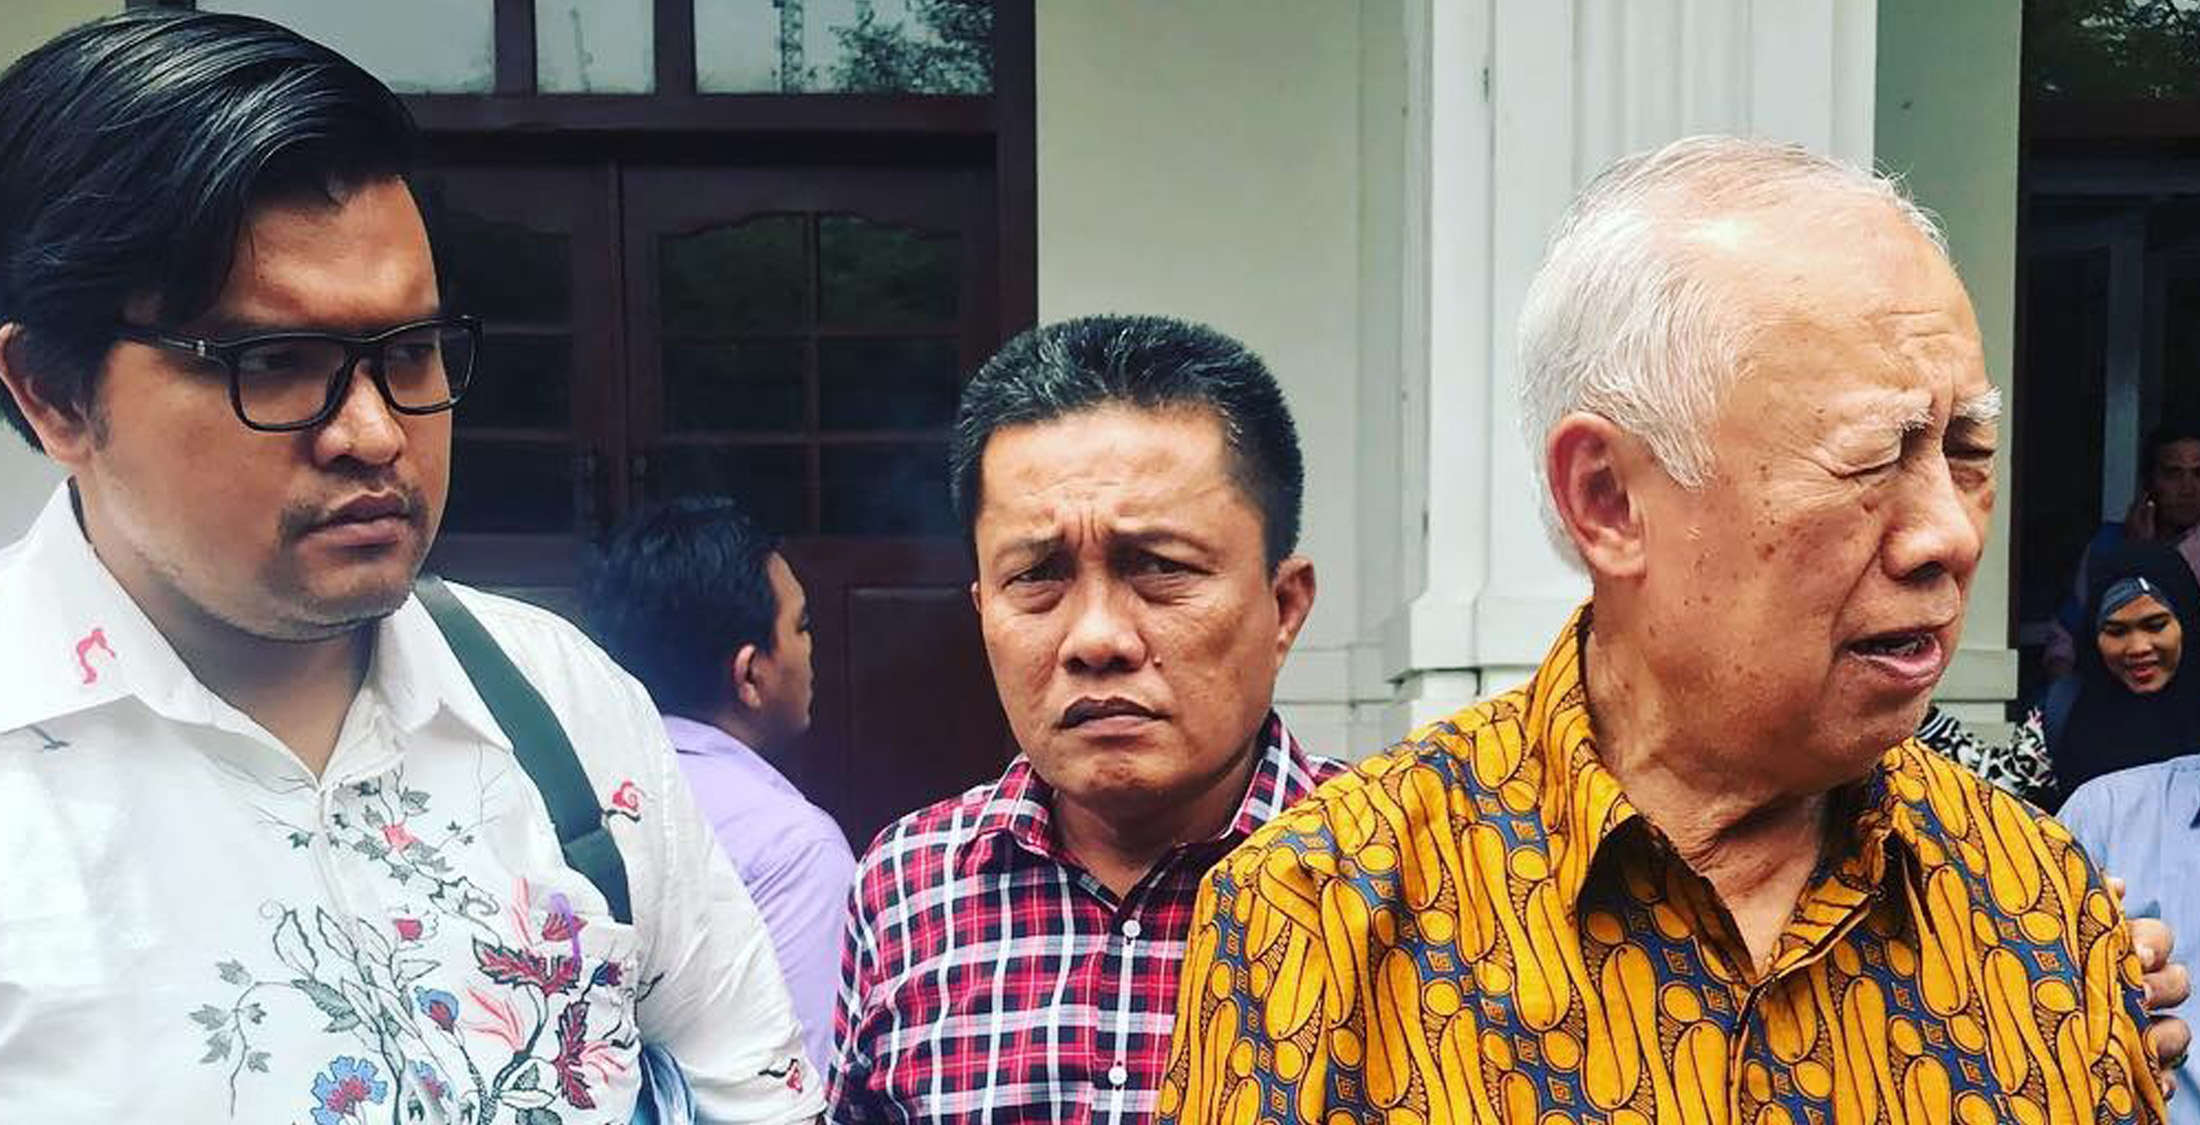 PH Flora Simbolon Menuntut Persidangan Yang Adil di PN Medan